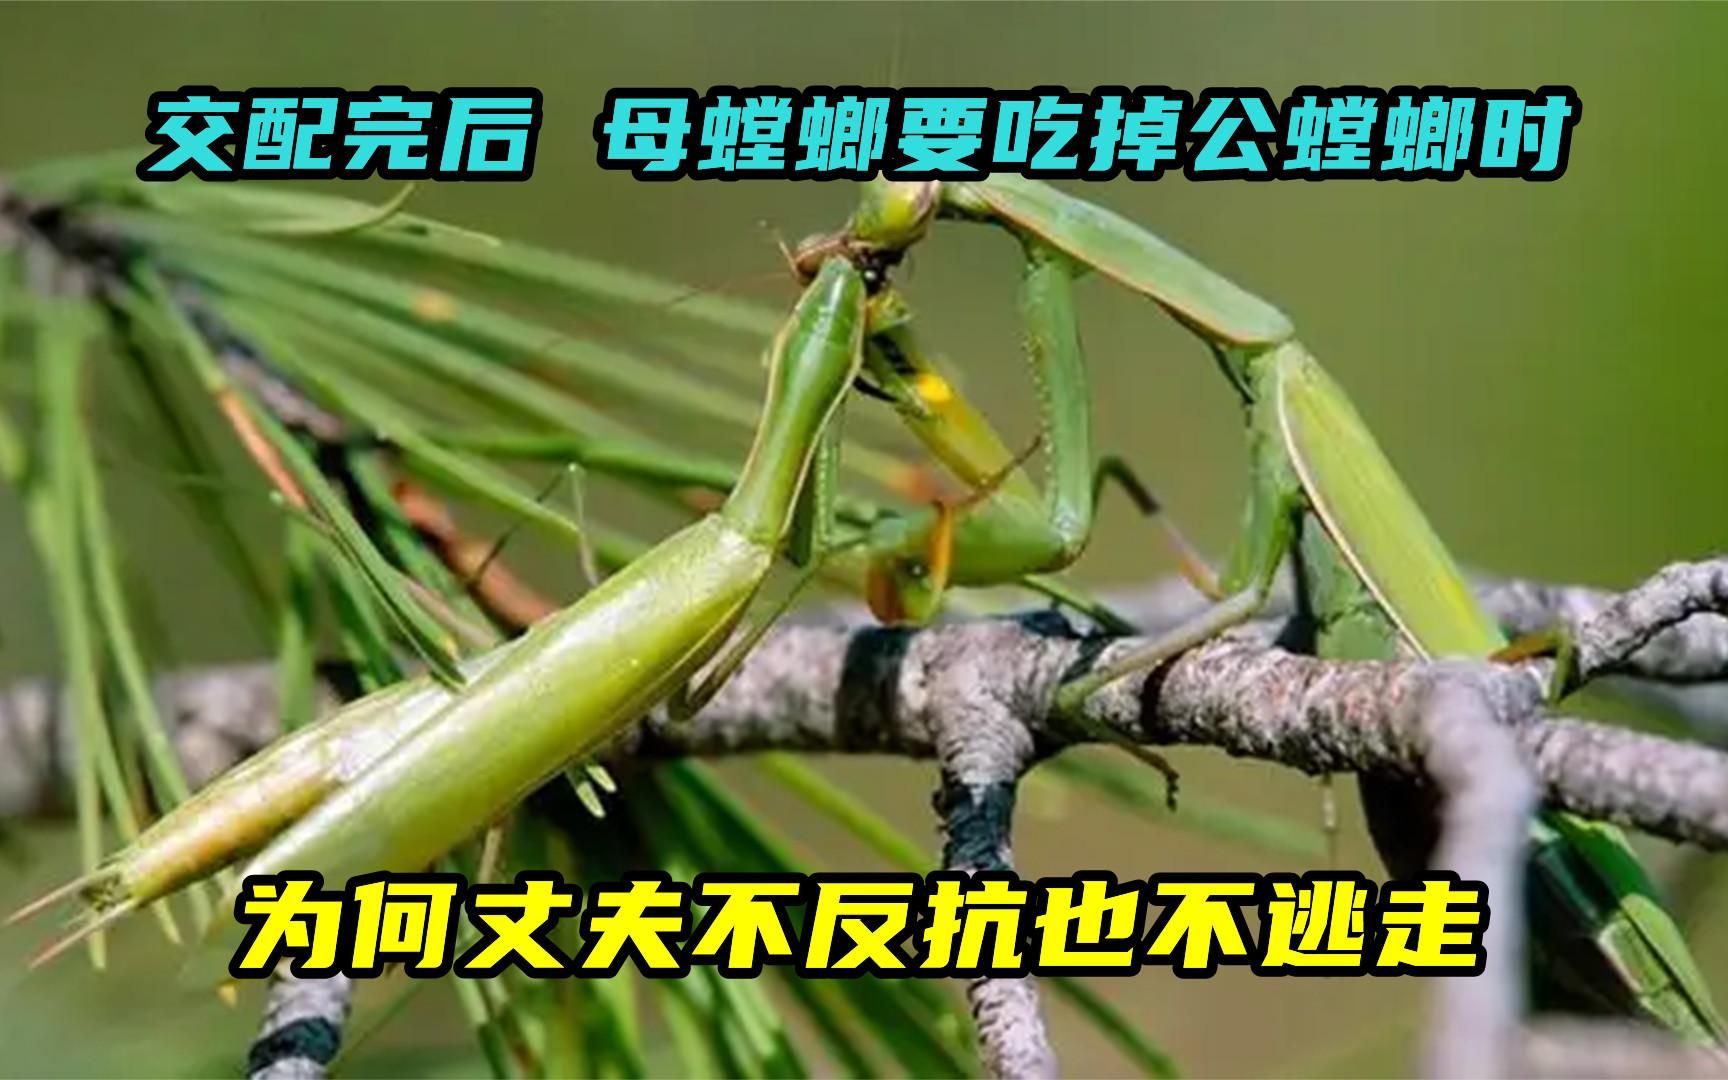 交配完后,母螳螂要吃掉公螳螂时,为何丈夫不反抗也不逃走?